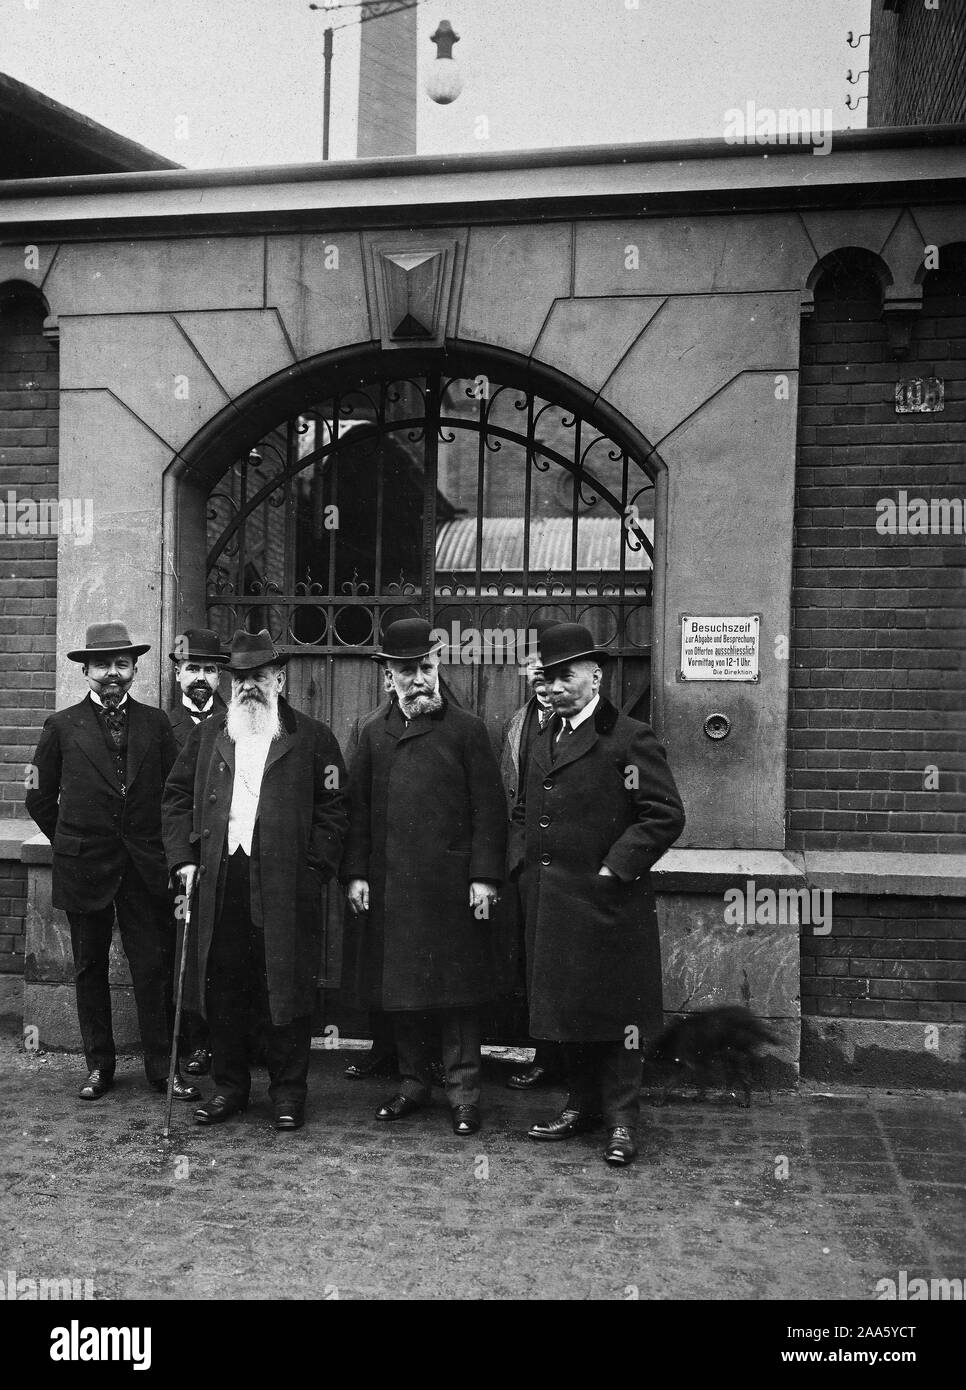 Geheimrat Erhardt of the Rheinisch Metal Works ca. 1916-1918 Stock Photo